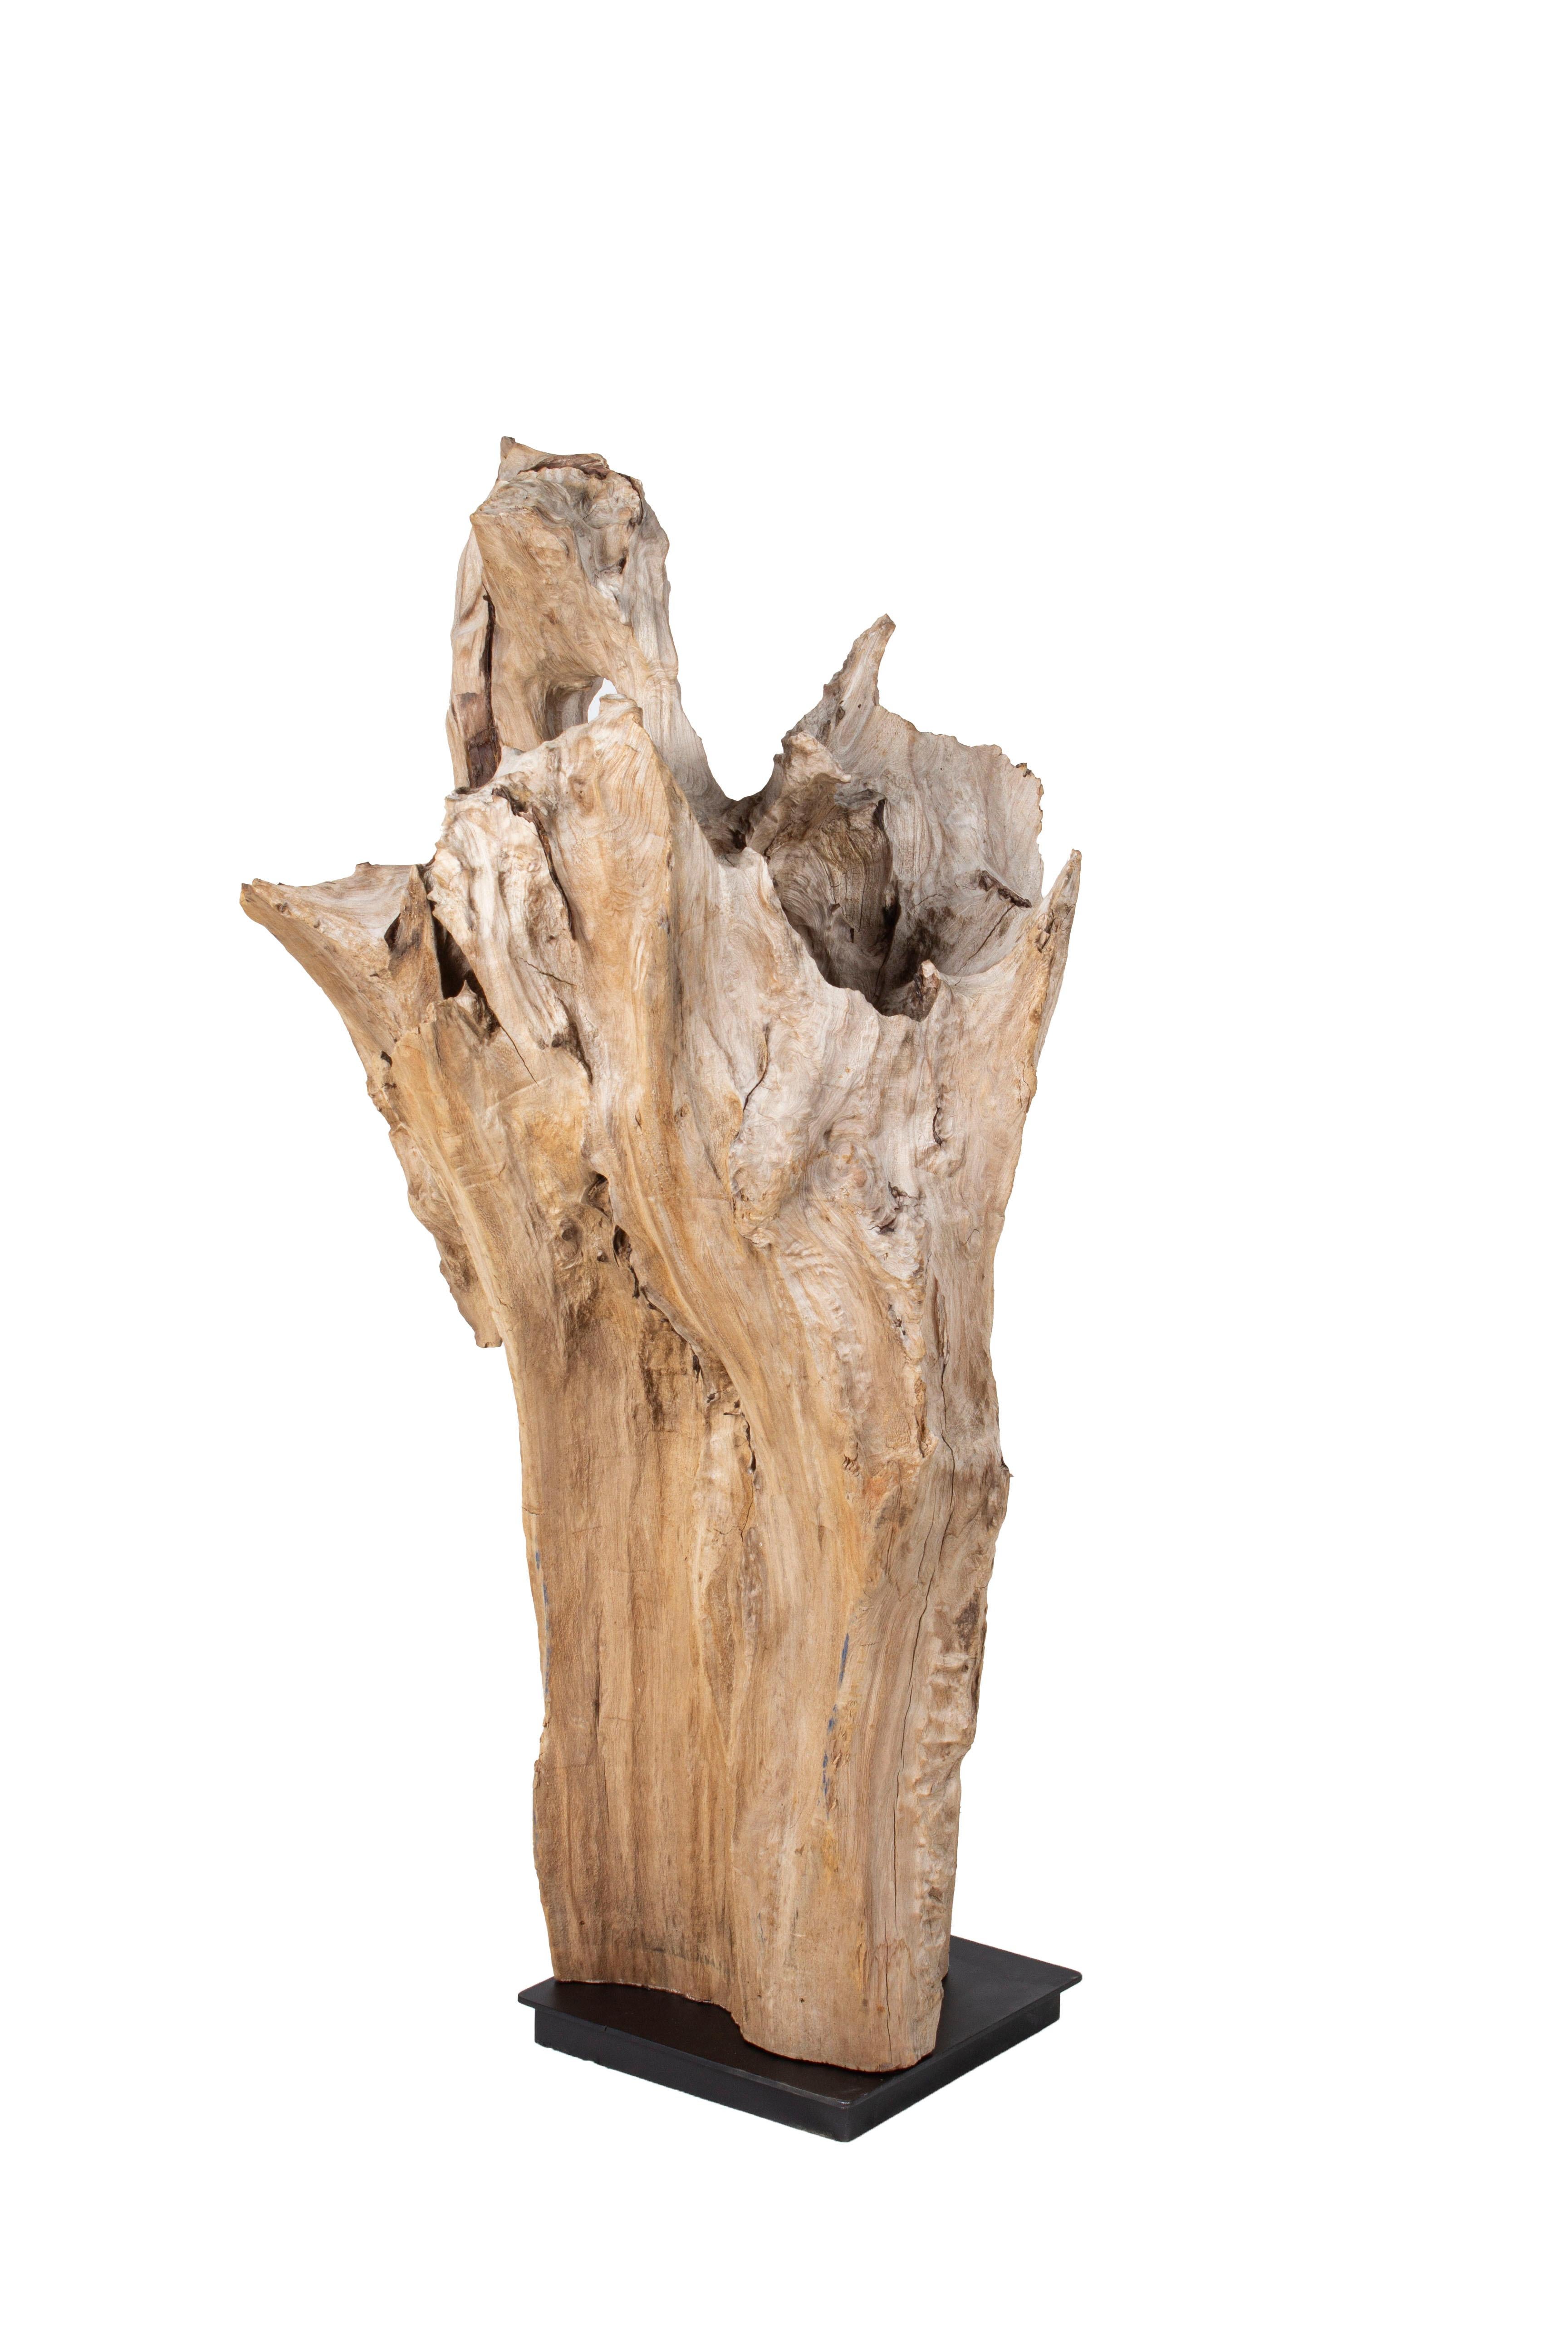 Sculpture organique en bois de cyprès Sinker en patine grise érodée sur une monture en métal ébonisé. 
Se trouve dans les zones côtières des basses terres de la Caroline du Sud. Ces 